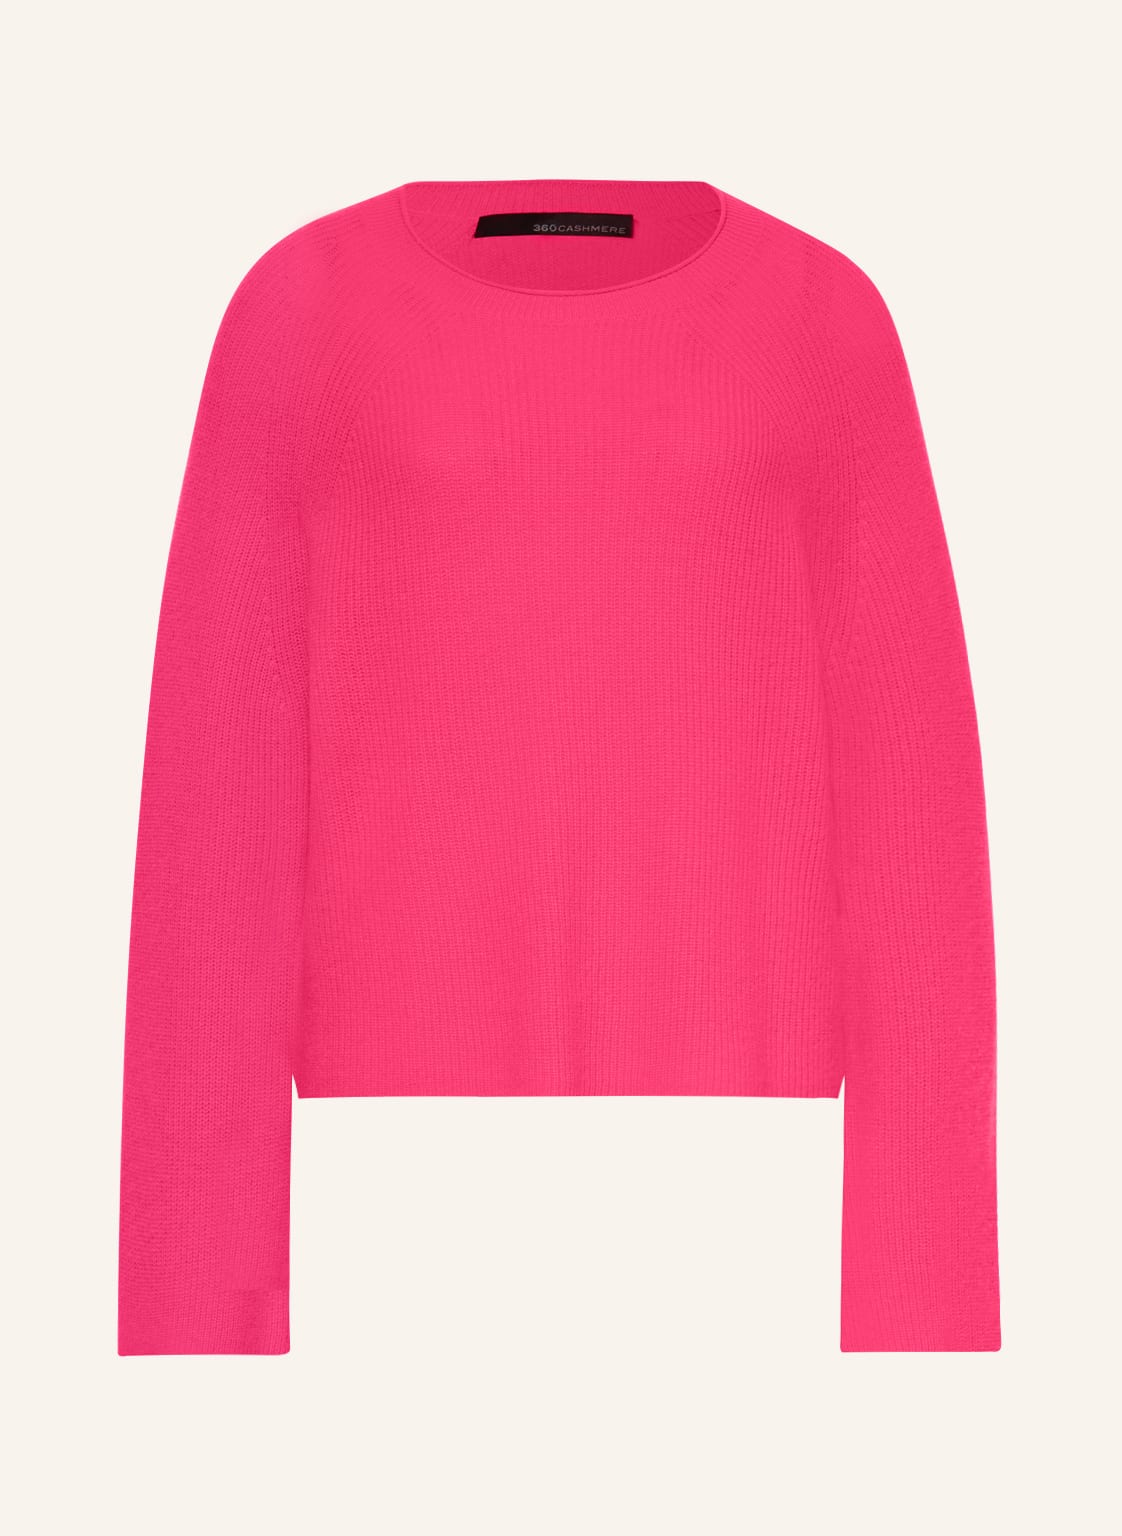 360cashmere Cashmere-Pullover Sophie pink von 360cashmere